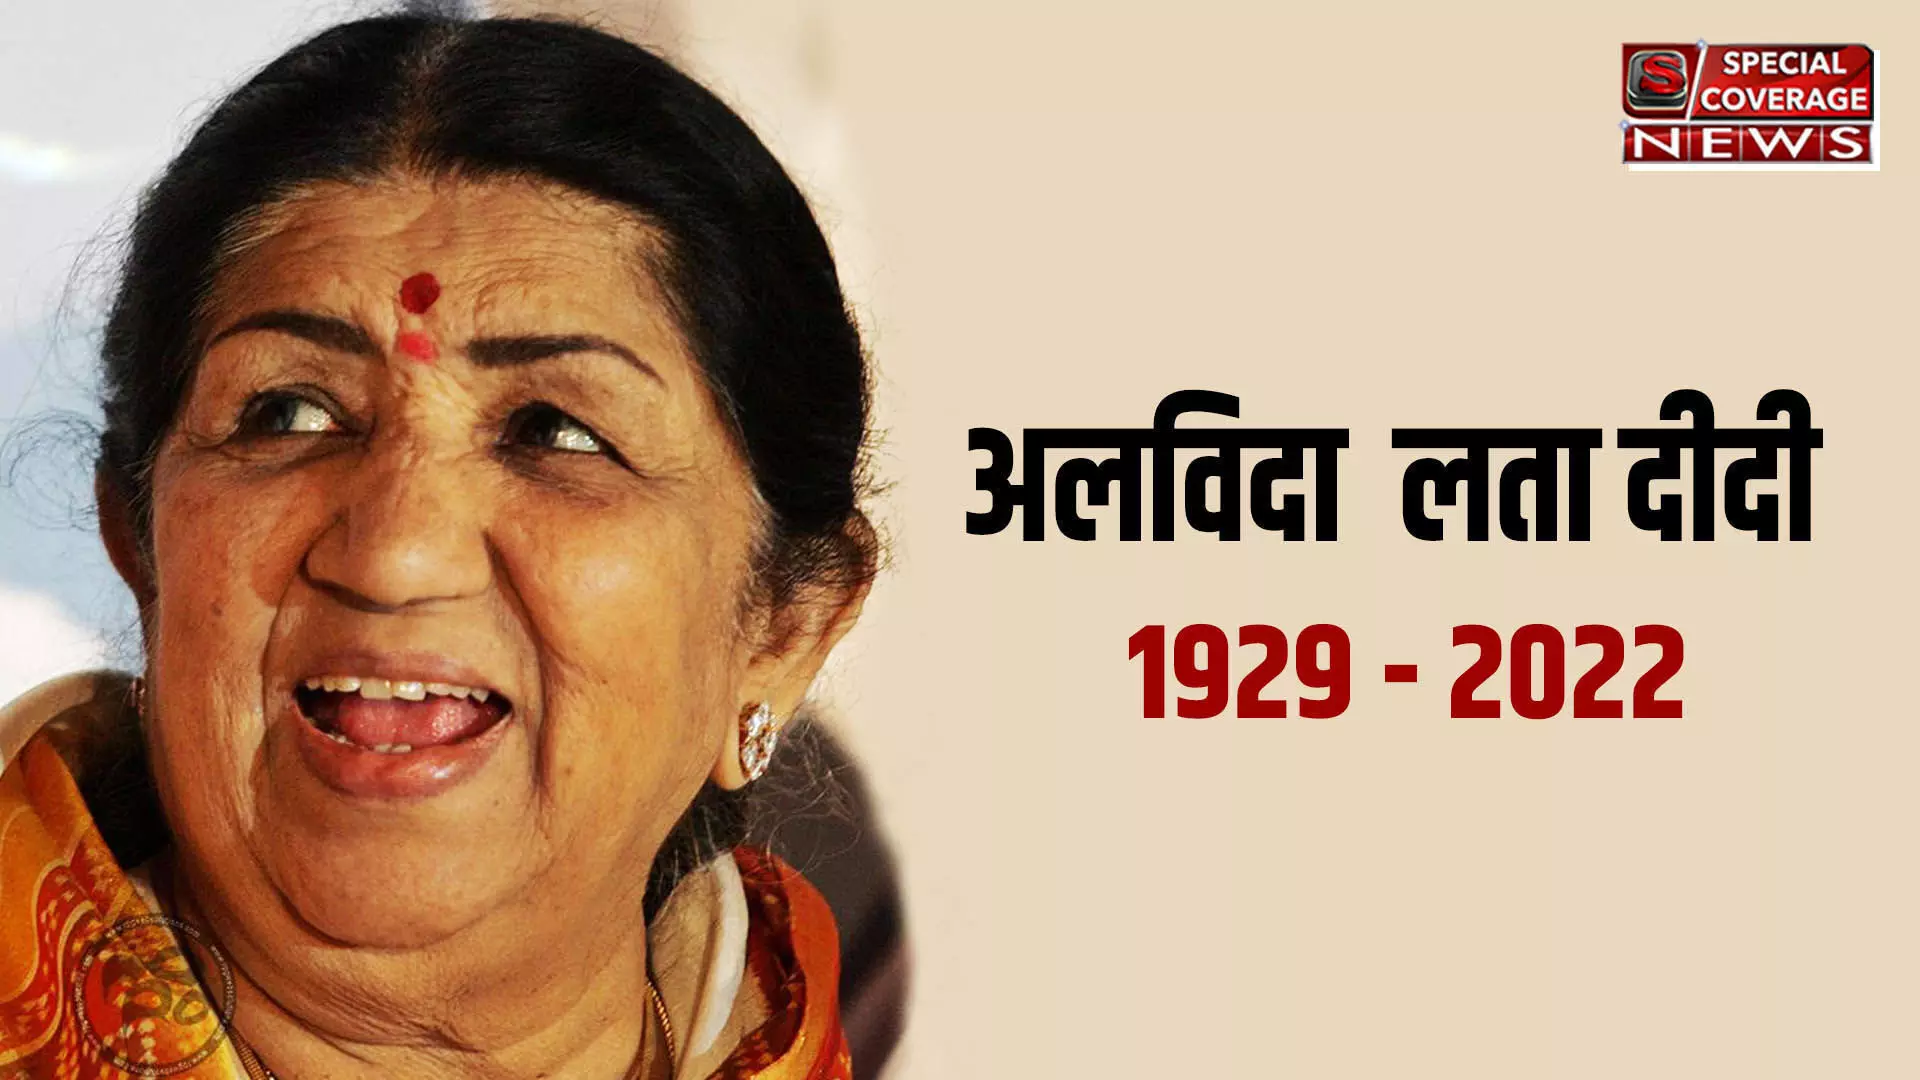 Lata Mangeshkar Passes Away : अलविदा दीदी : स्वर कोकिला लता मंगेशकर का निधन, शोक में डूबा देश